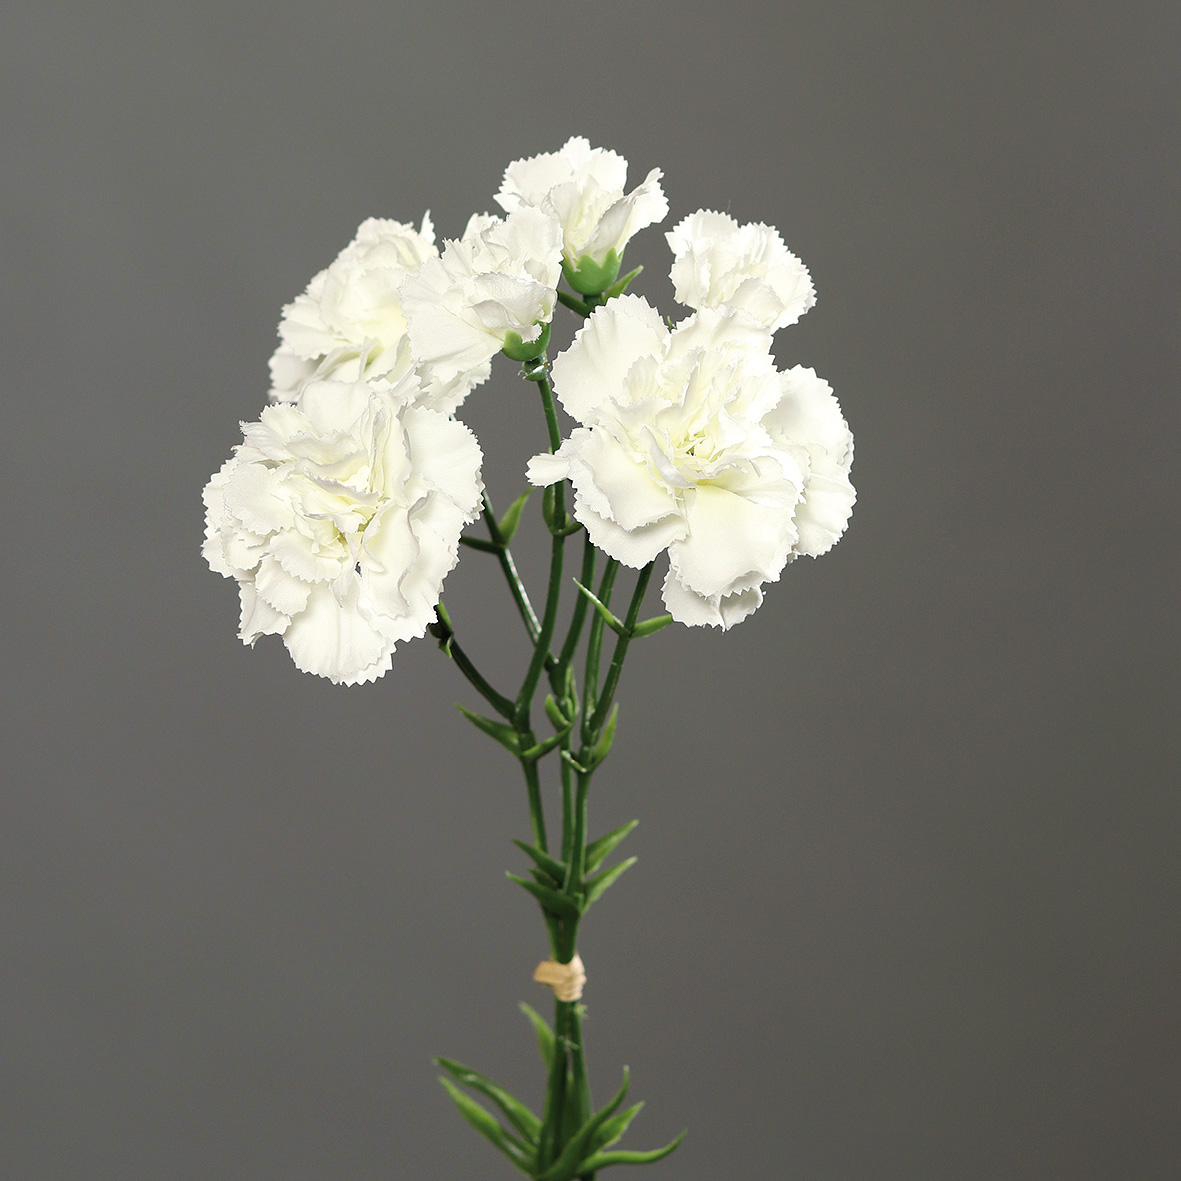 Nelkenbund mit 3 Stielen 30cm weiß DP Kunstblumen künstliche Blumen Nelken